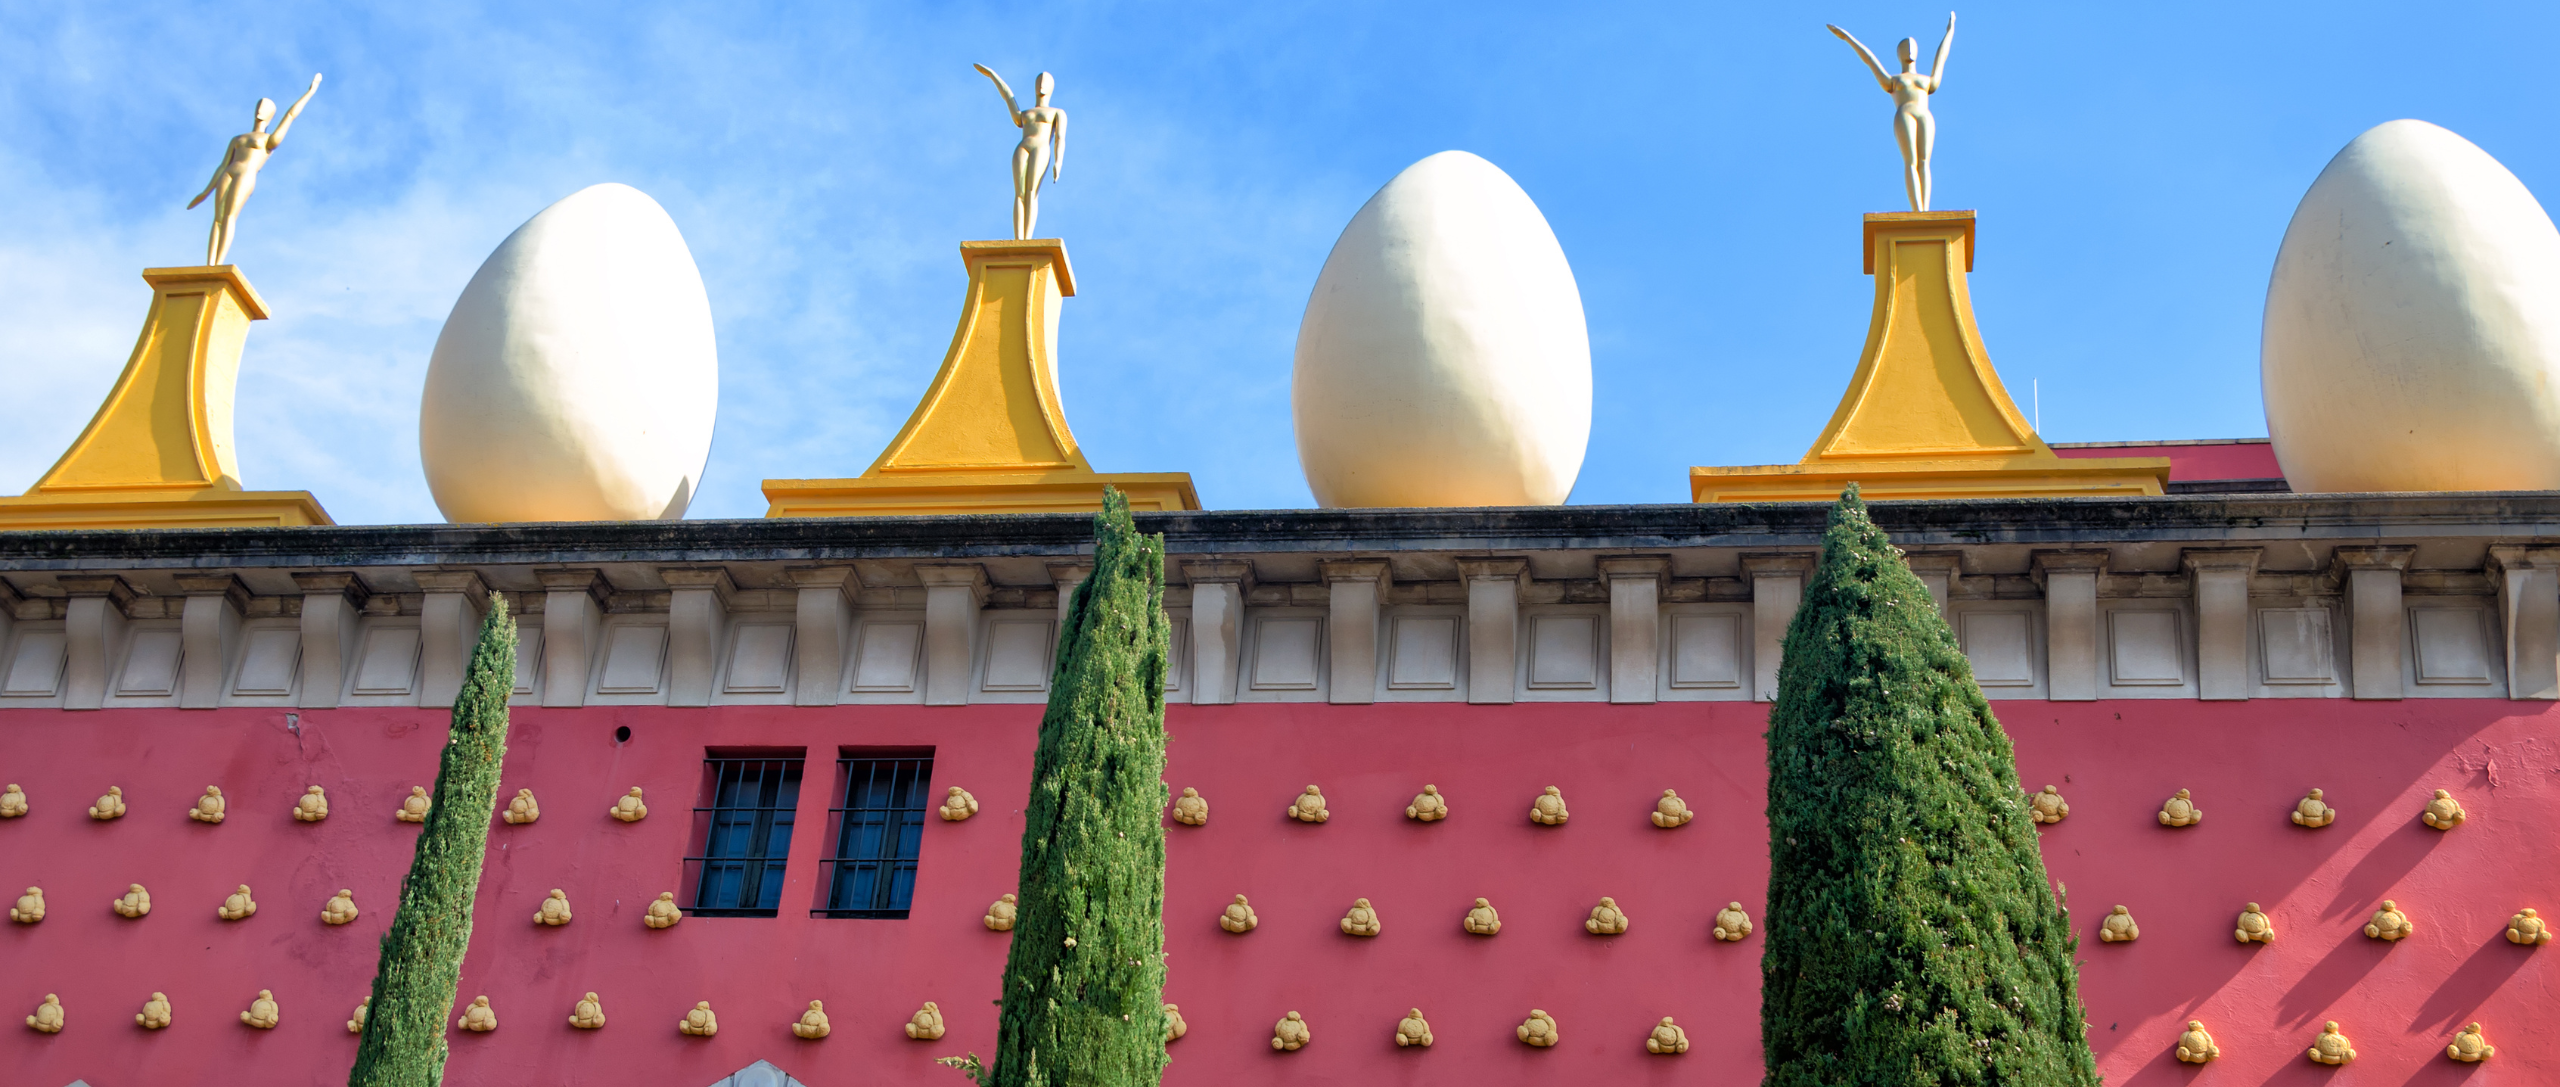 Detalle del castillo de púbol que creó Salvador Dalí para su mujer y musa Gala